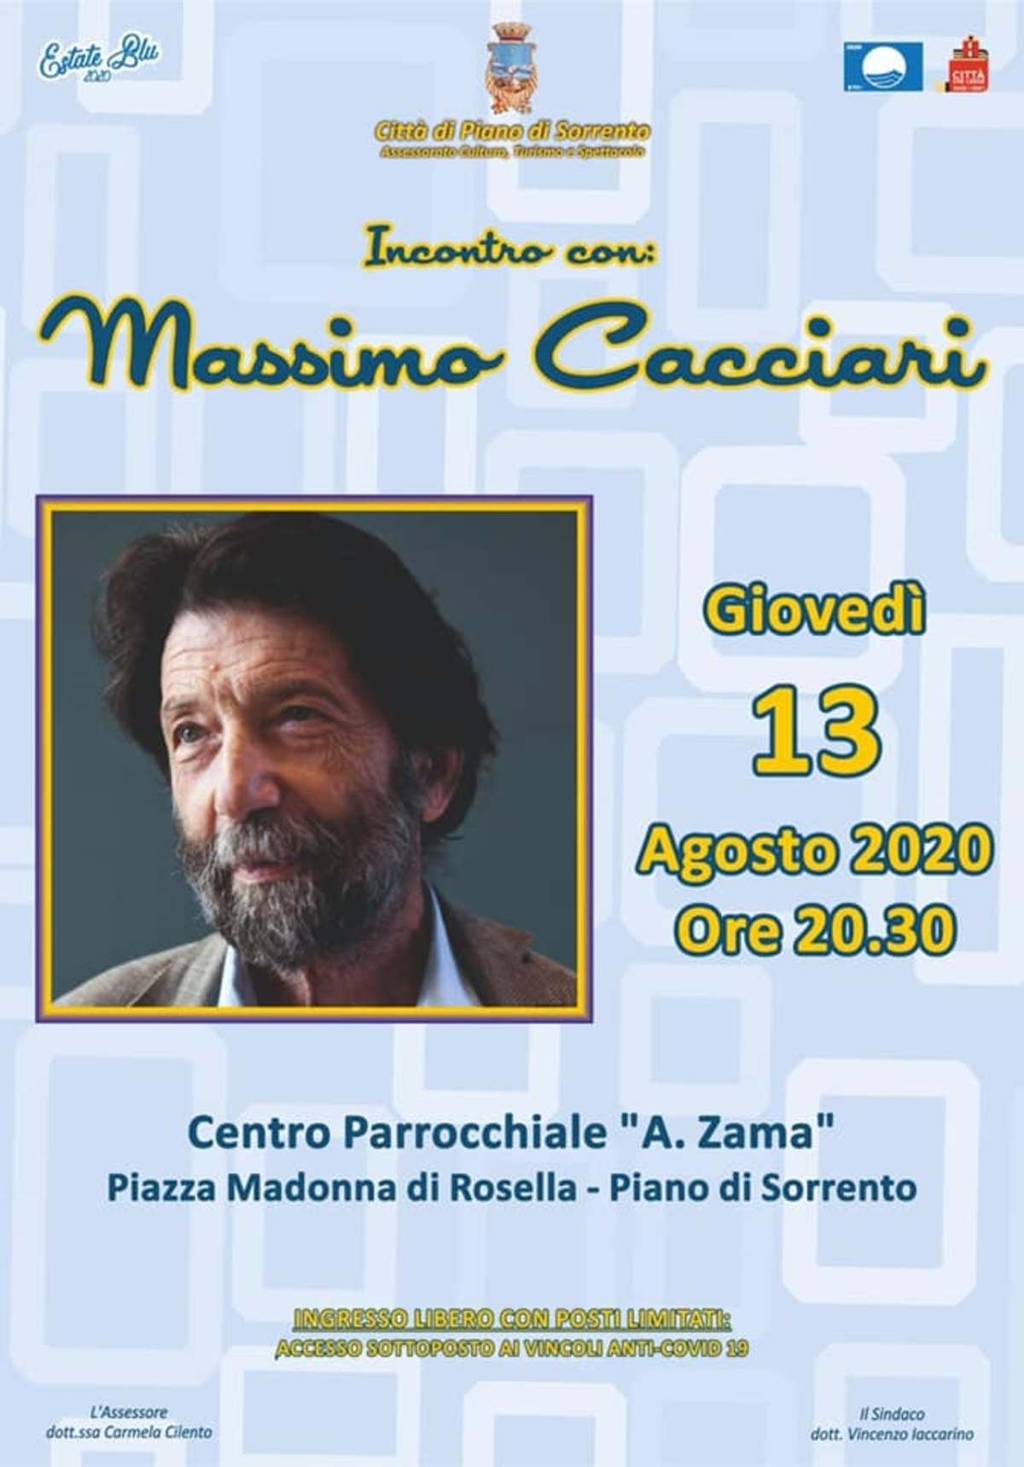 Incontro con Massimo Cacciari